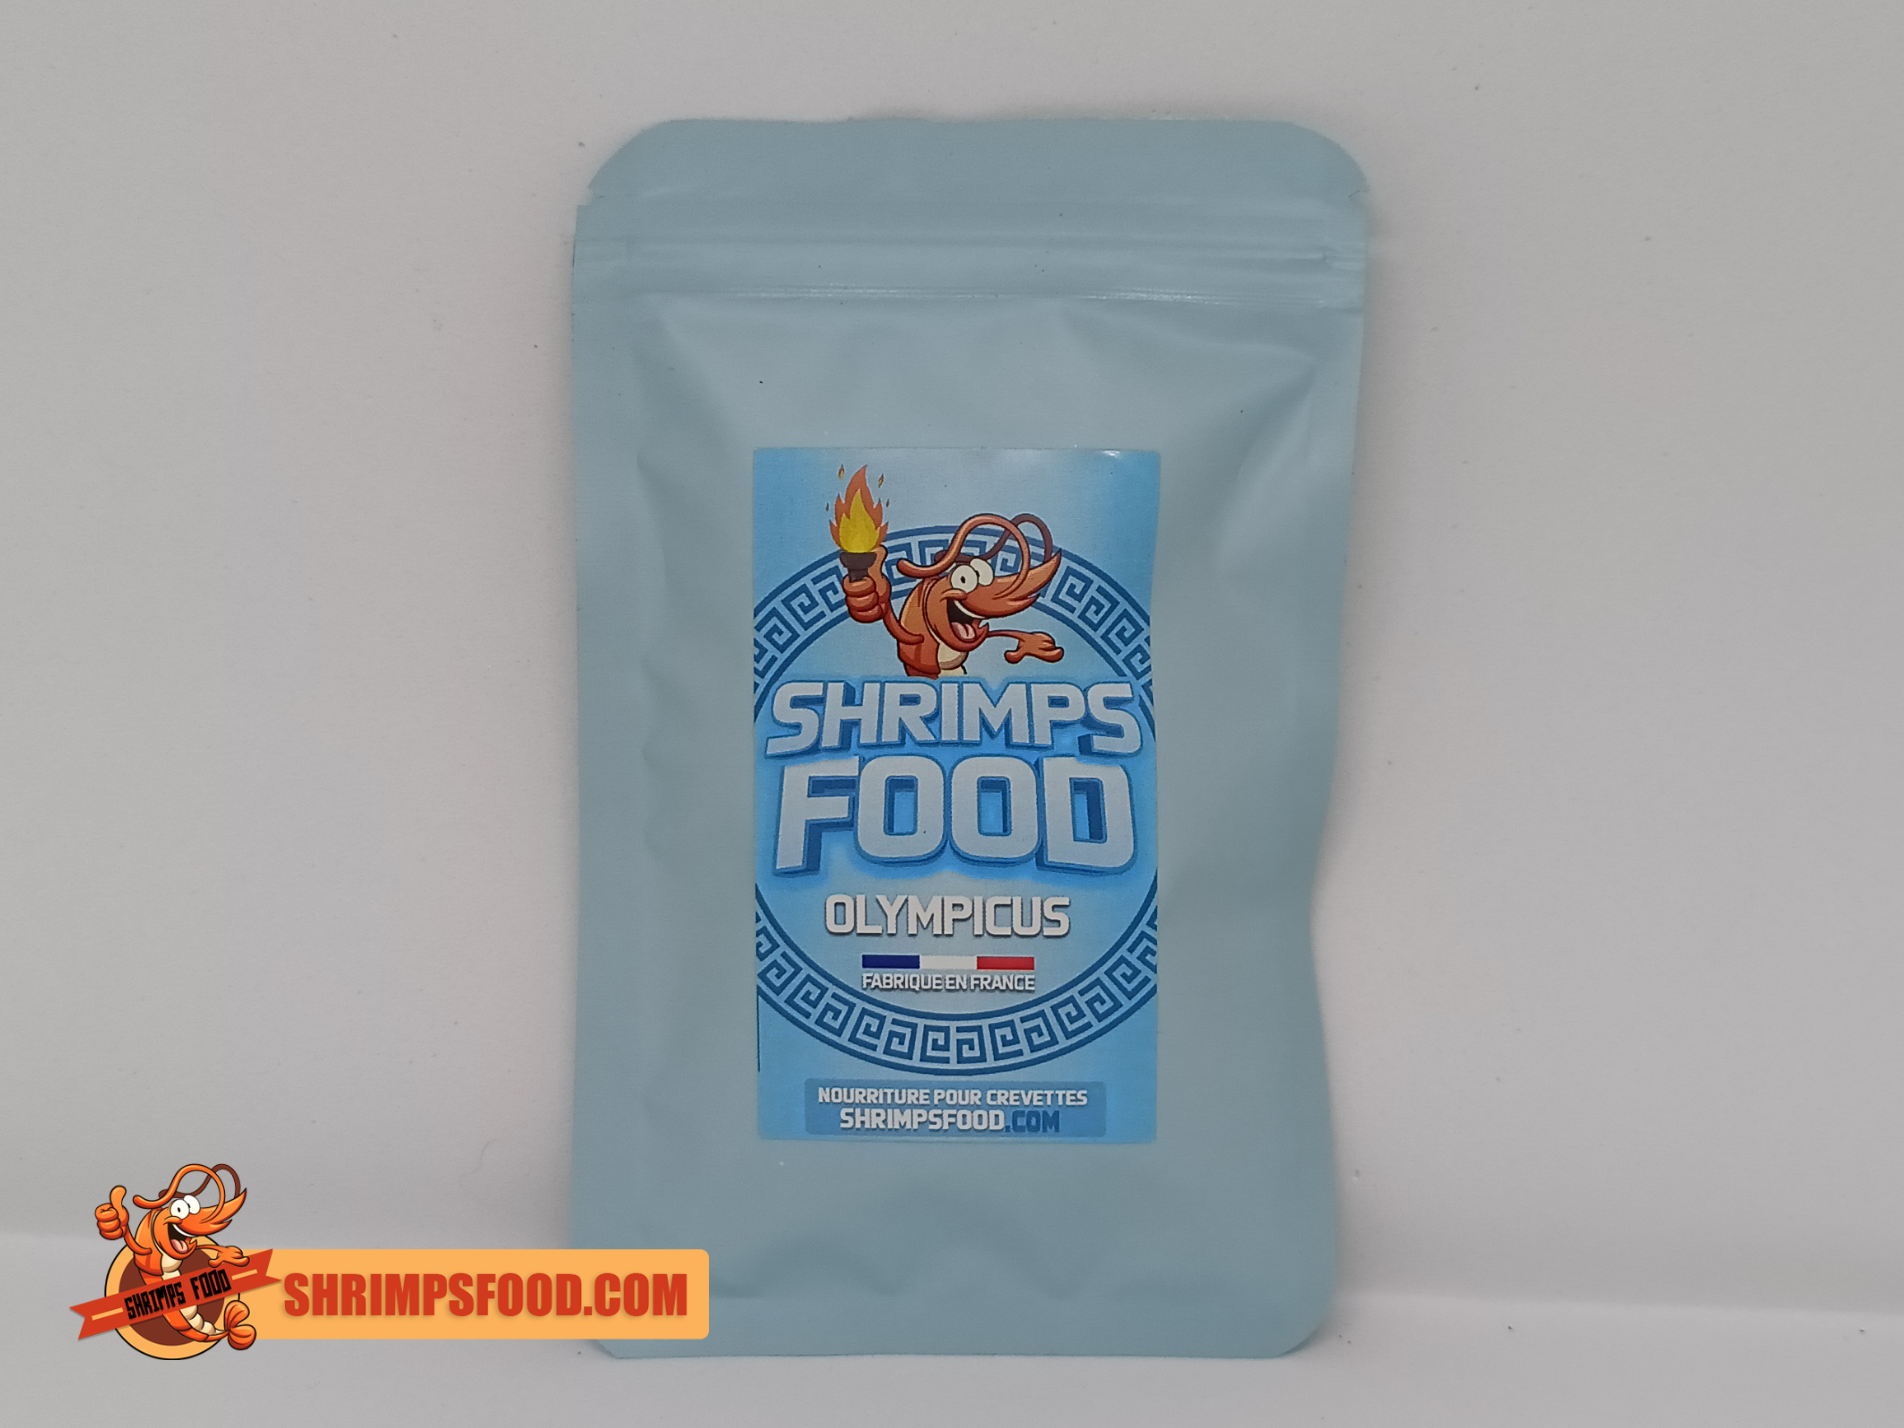 Sticks Olympicus nourriture pour crevettes – Shrimpsfood